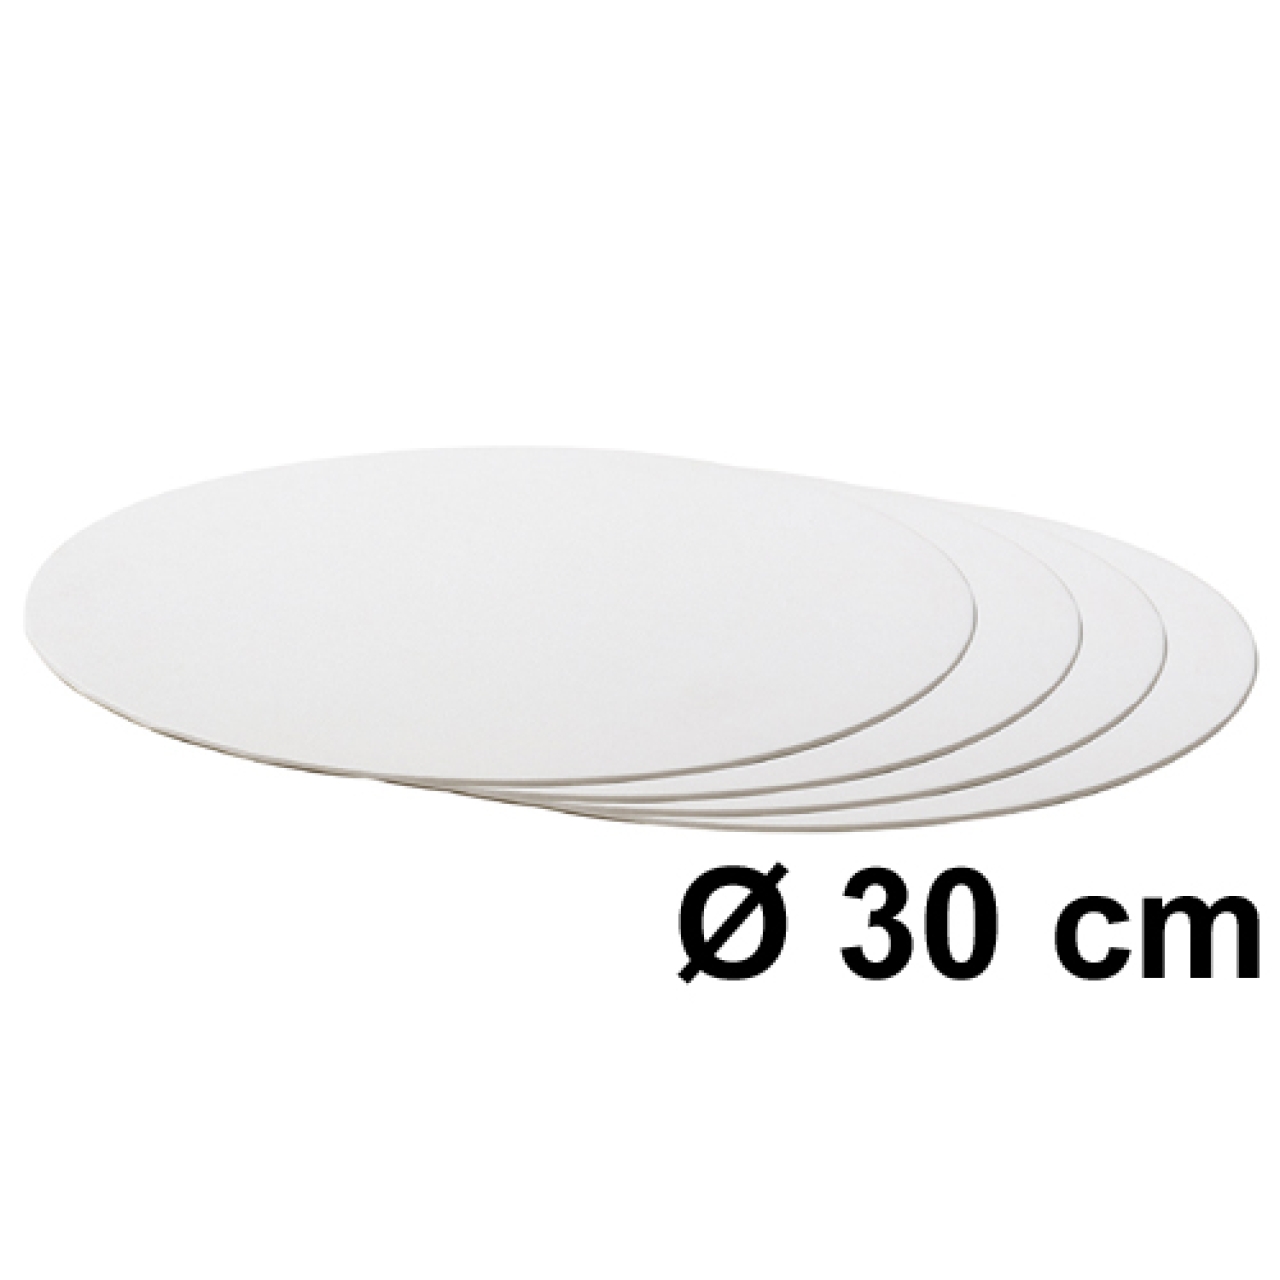 Tortenscheibe Weiß 30 cm